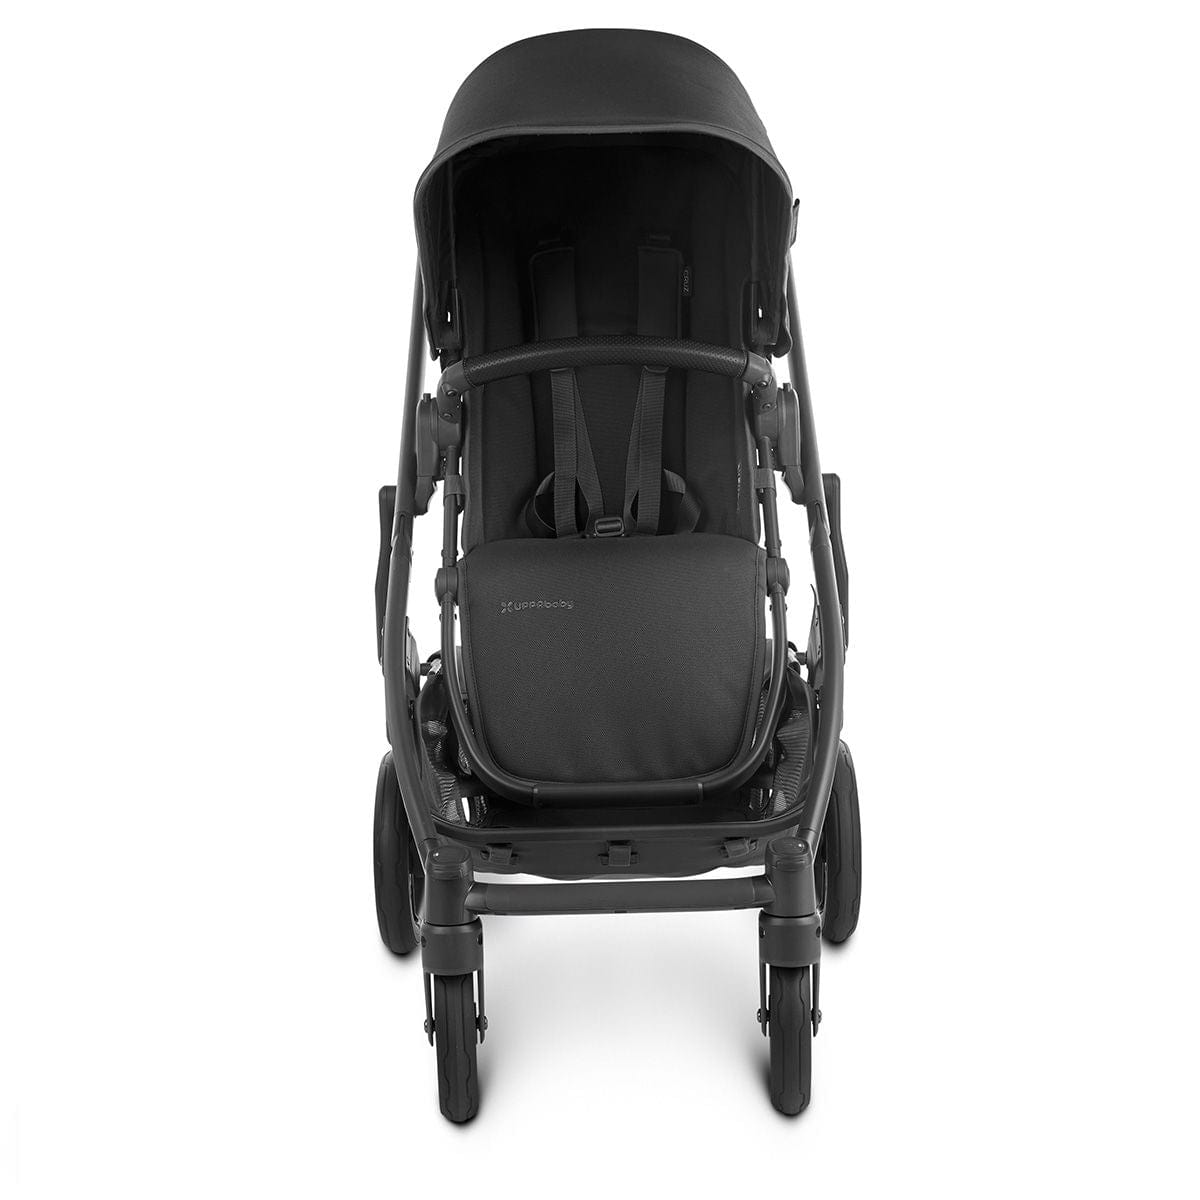 UPPAbaby stroller UPPAbaby CRUZ V2 Stroller - Jake (Black/Carbon/Black Leather)